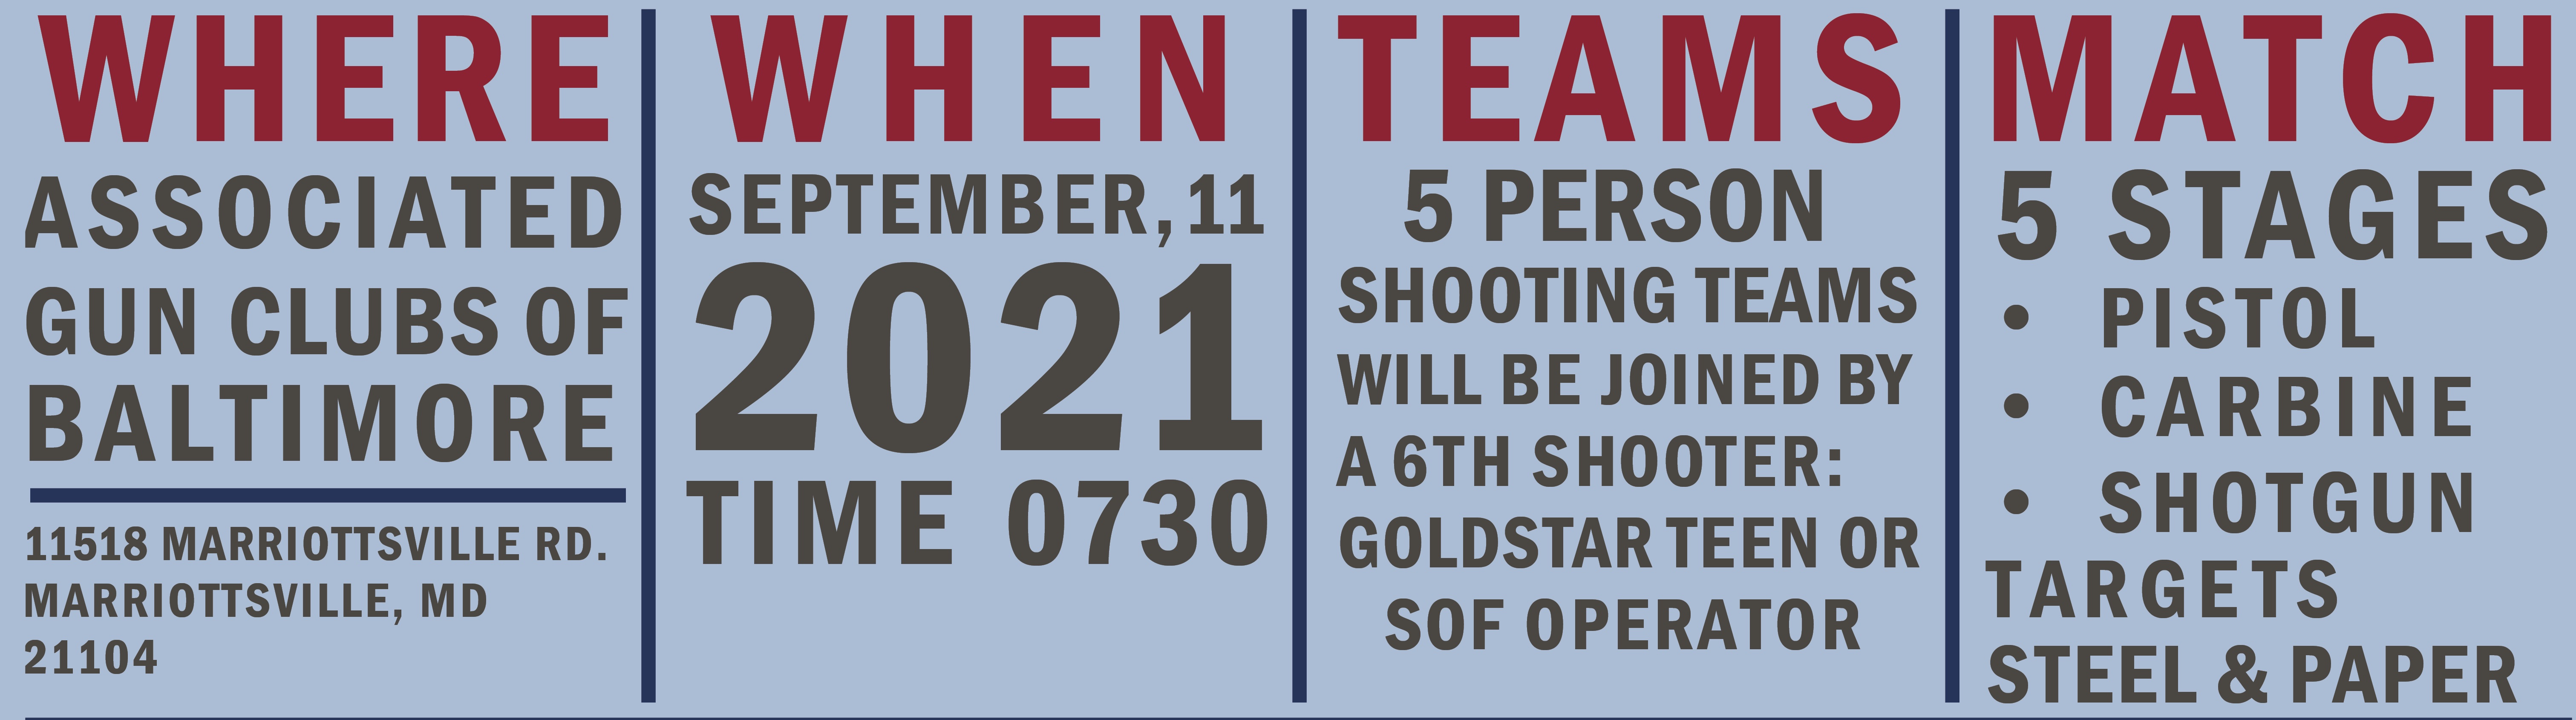 GSTA 3 Gun Match Poster copy.jpg